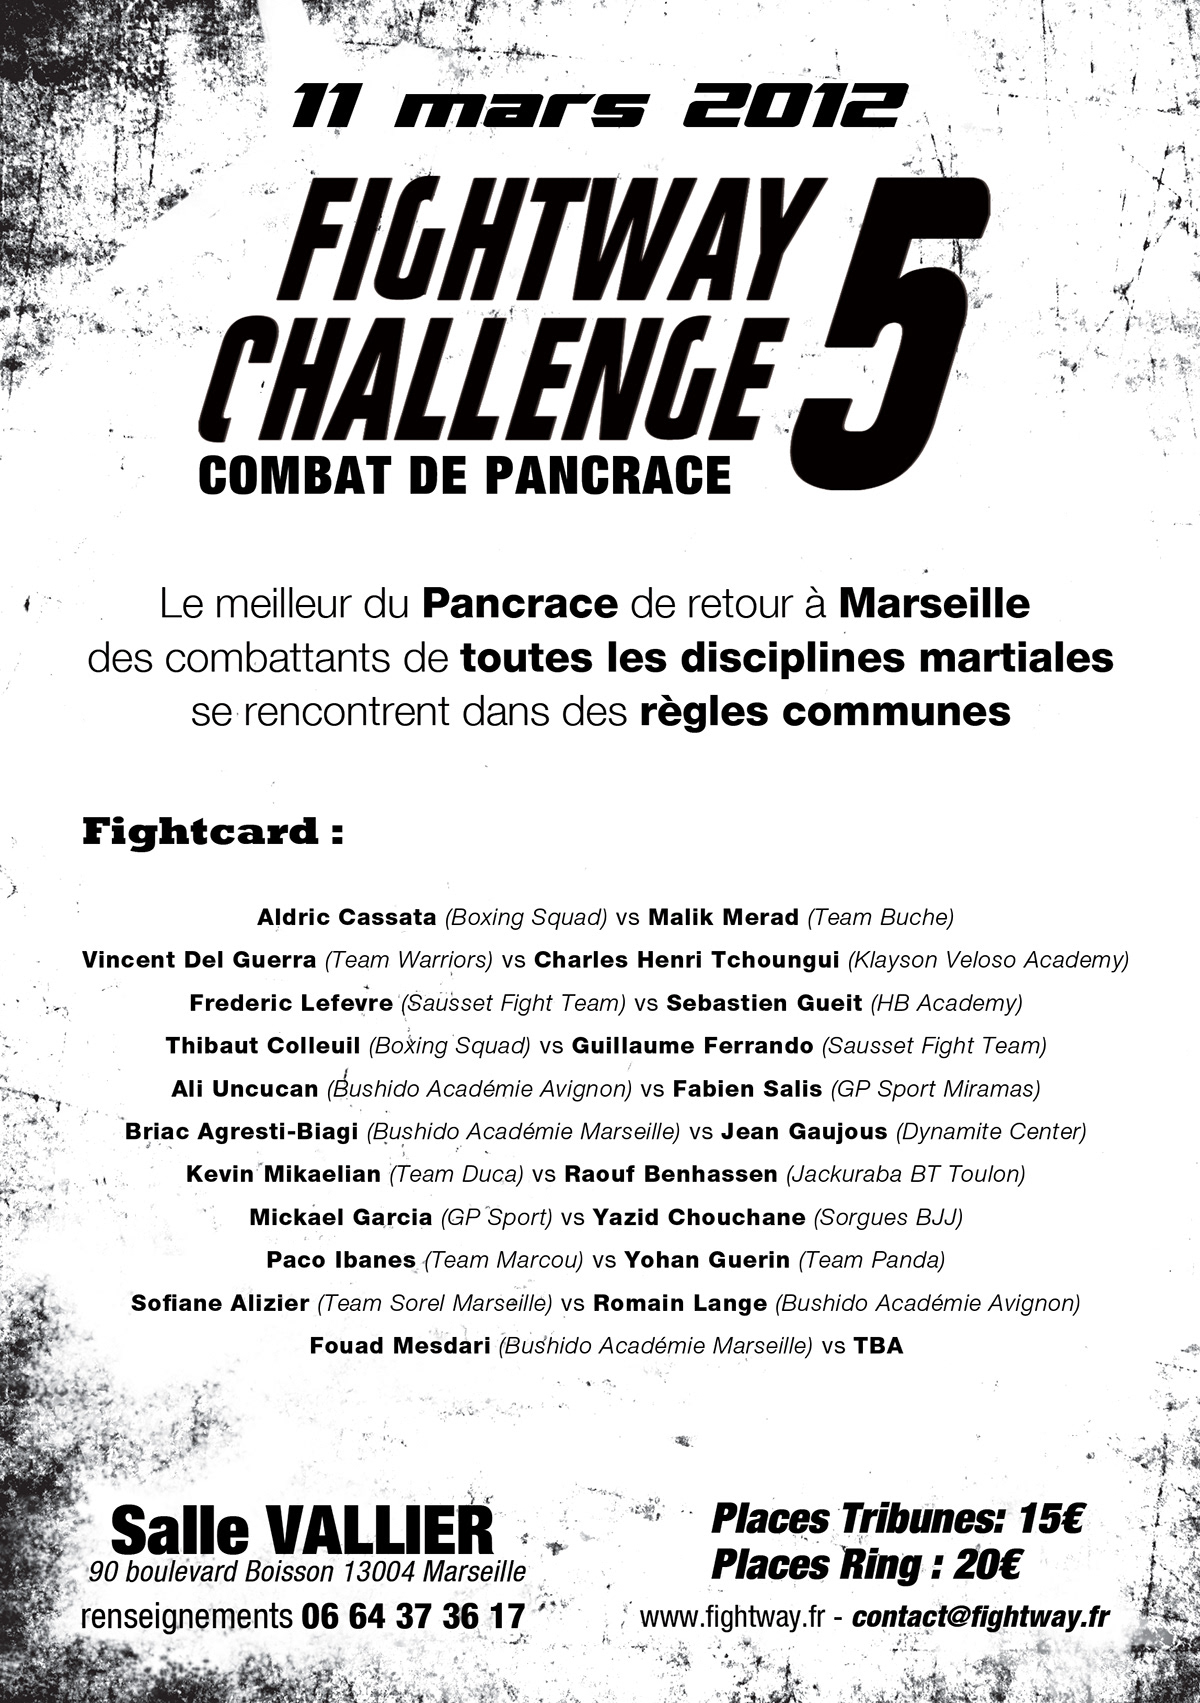 fightway challenge  free fight marseille